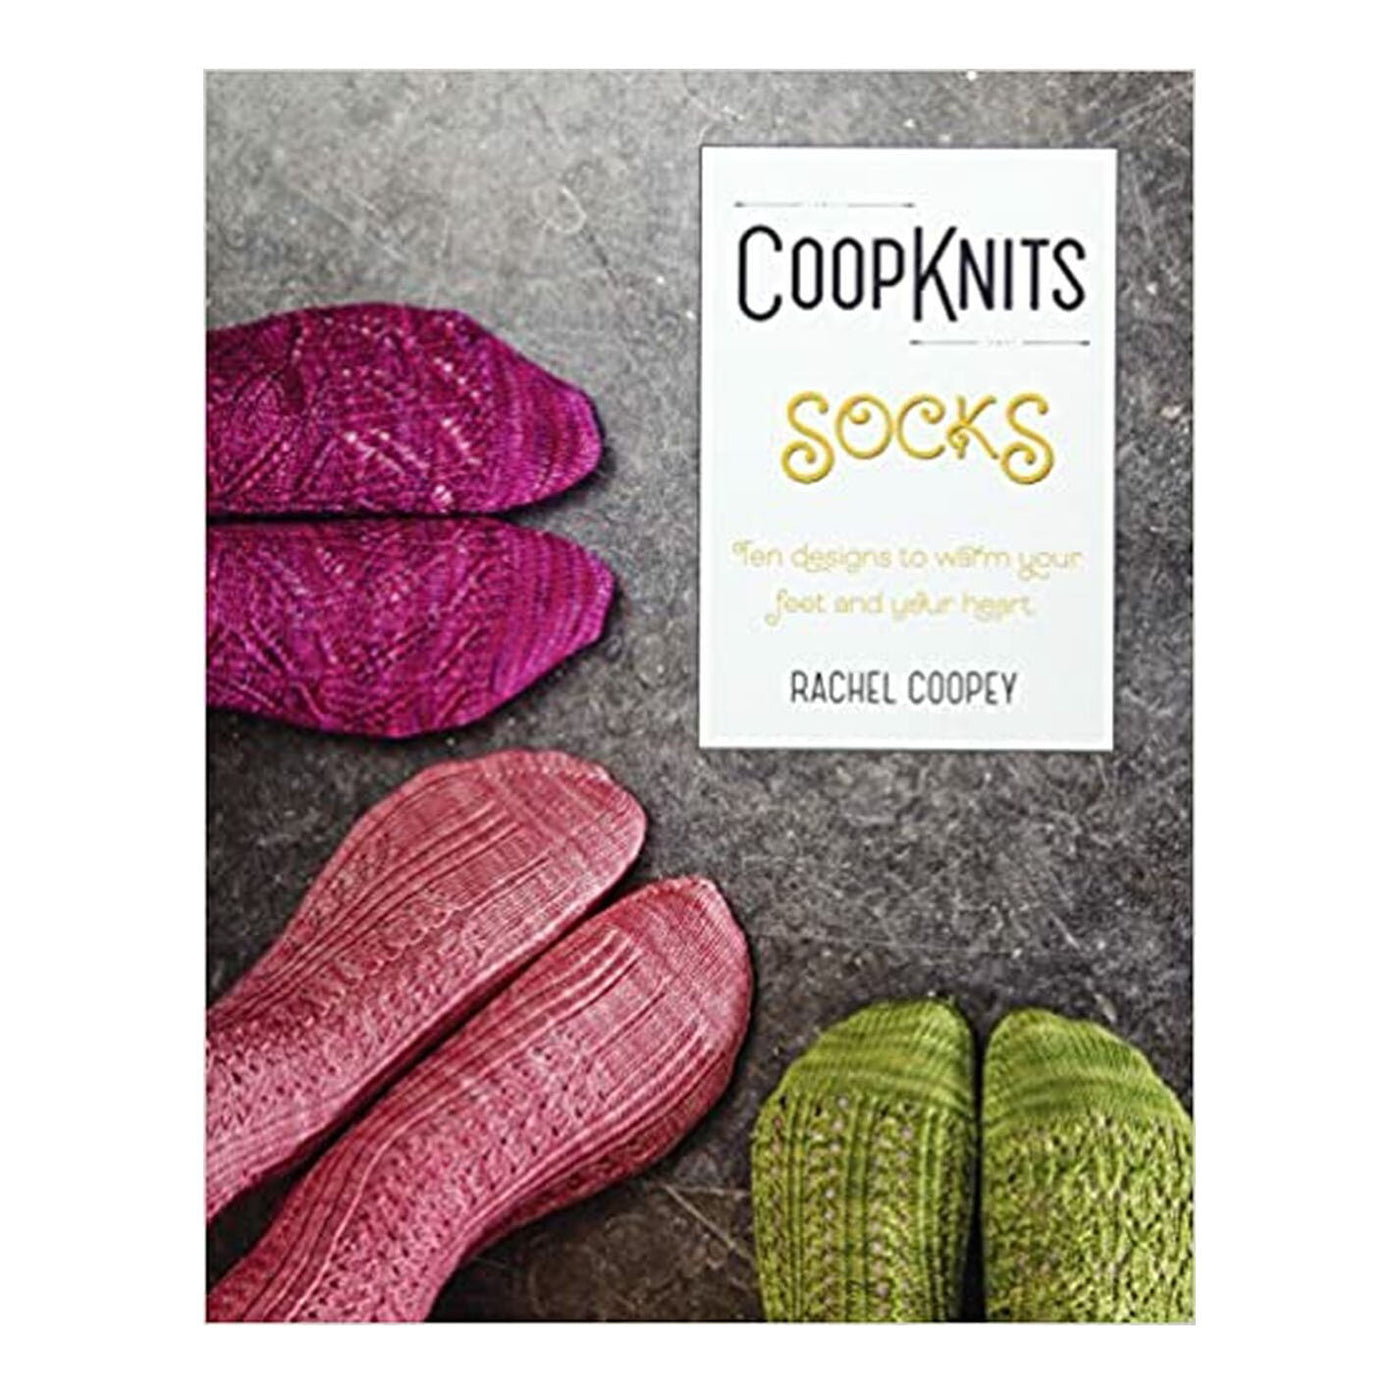 Coop Knits Socks Yeah! Volume 1